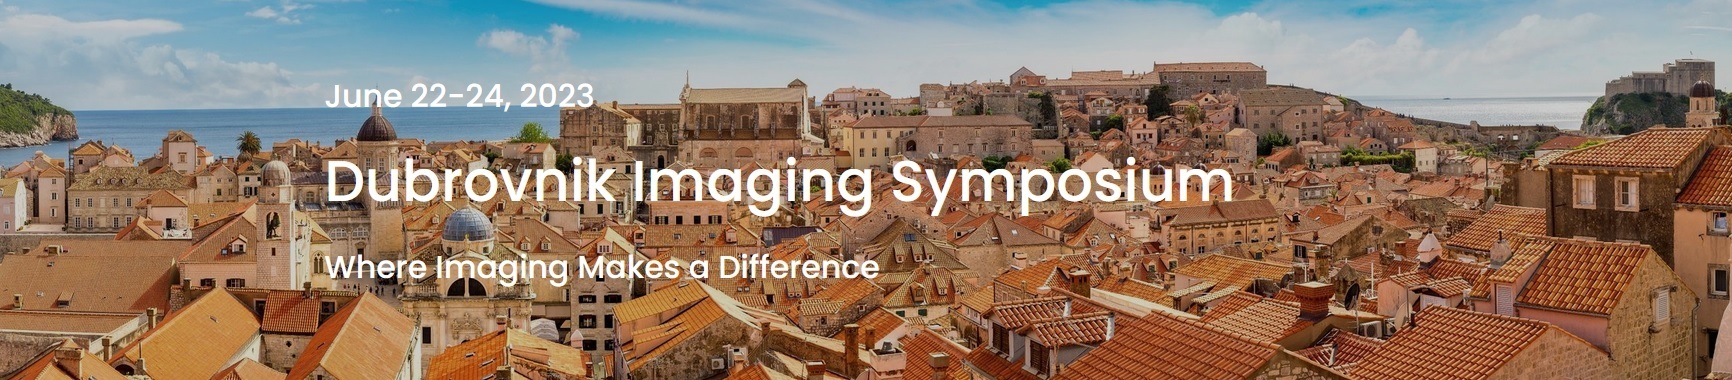 Dubrovnik Imaging Symposium 2023